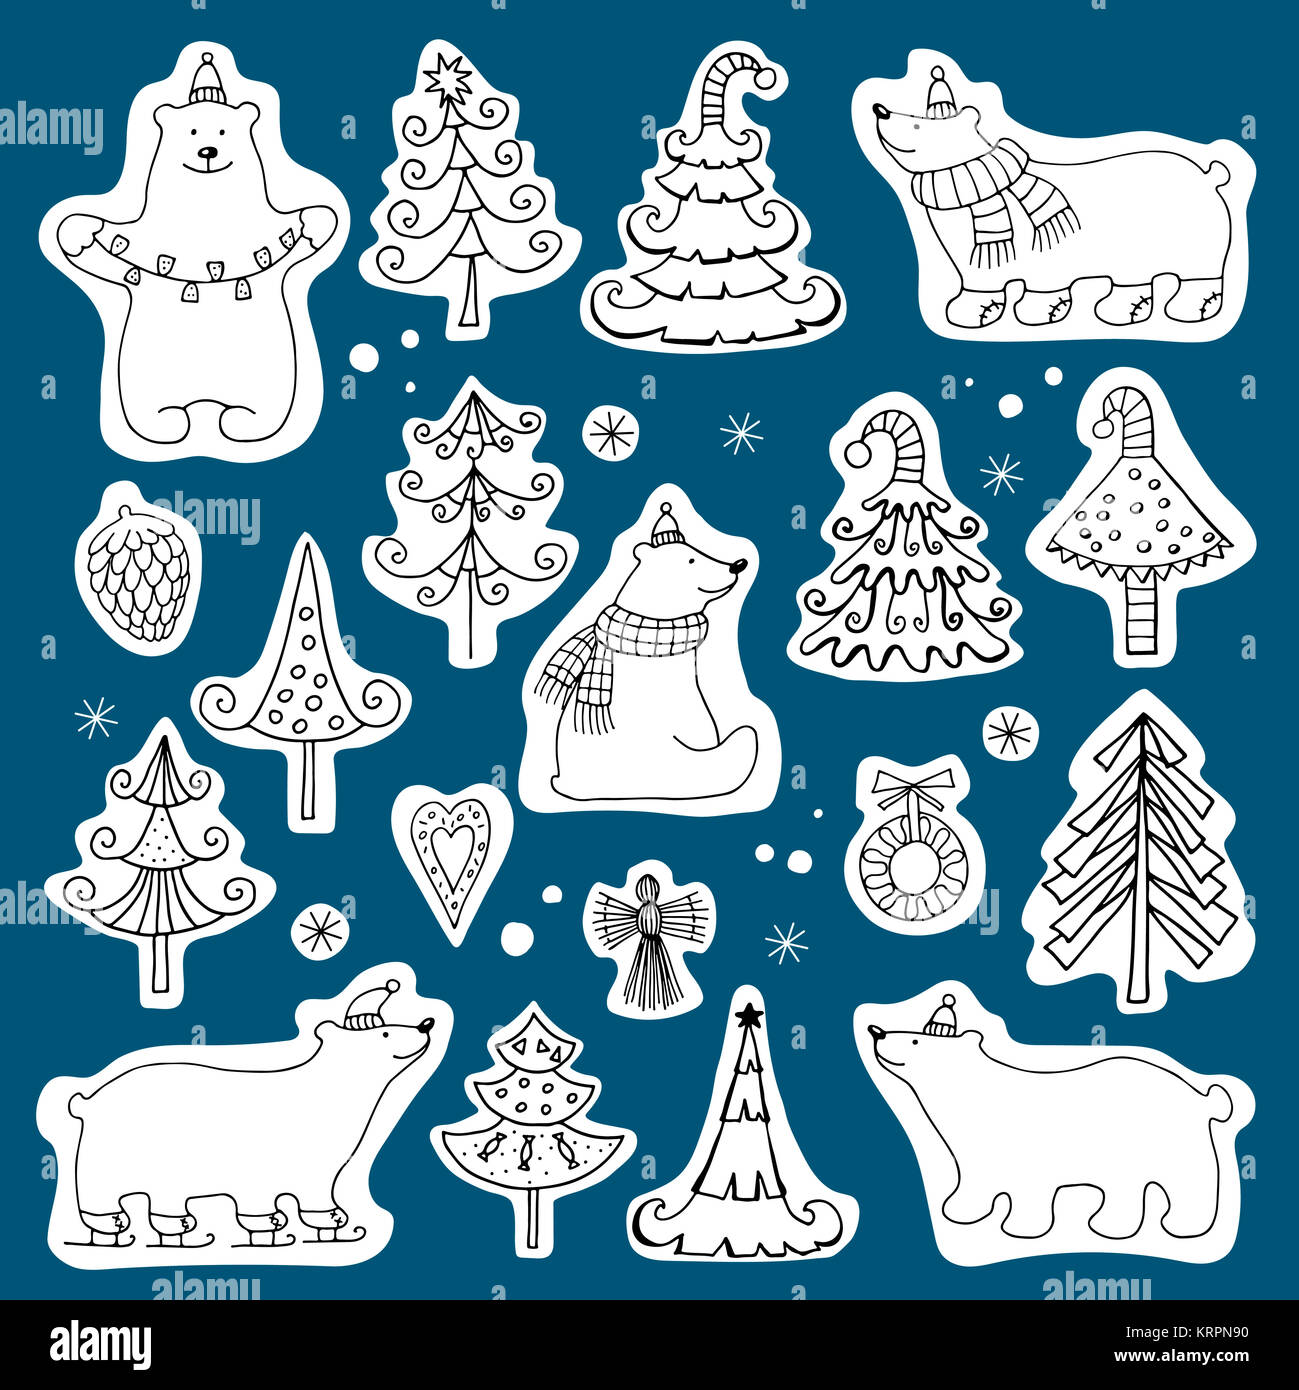 Einstellen der Symbole von Eisbären und Weihnachtsbäume Stockfoto